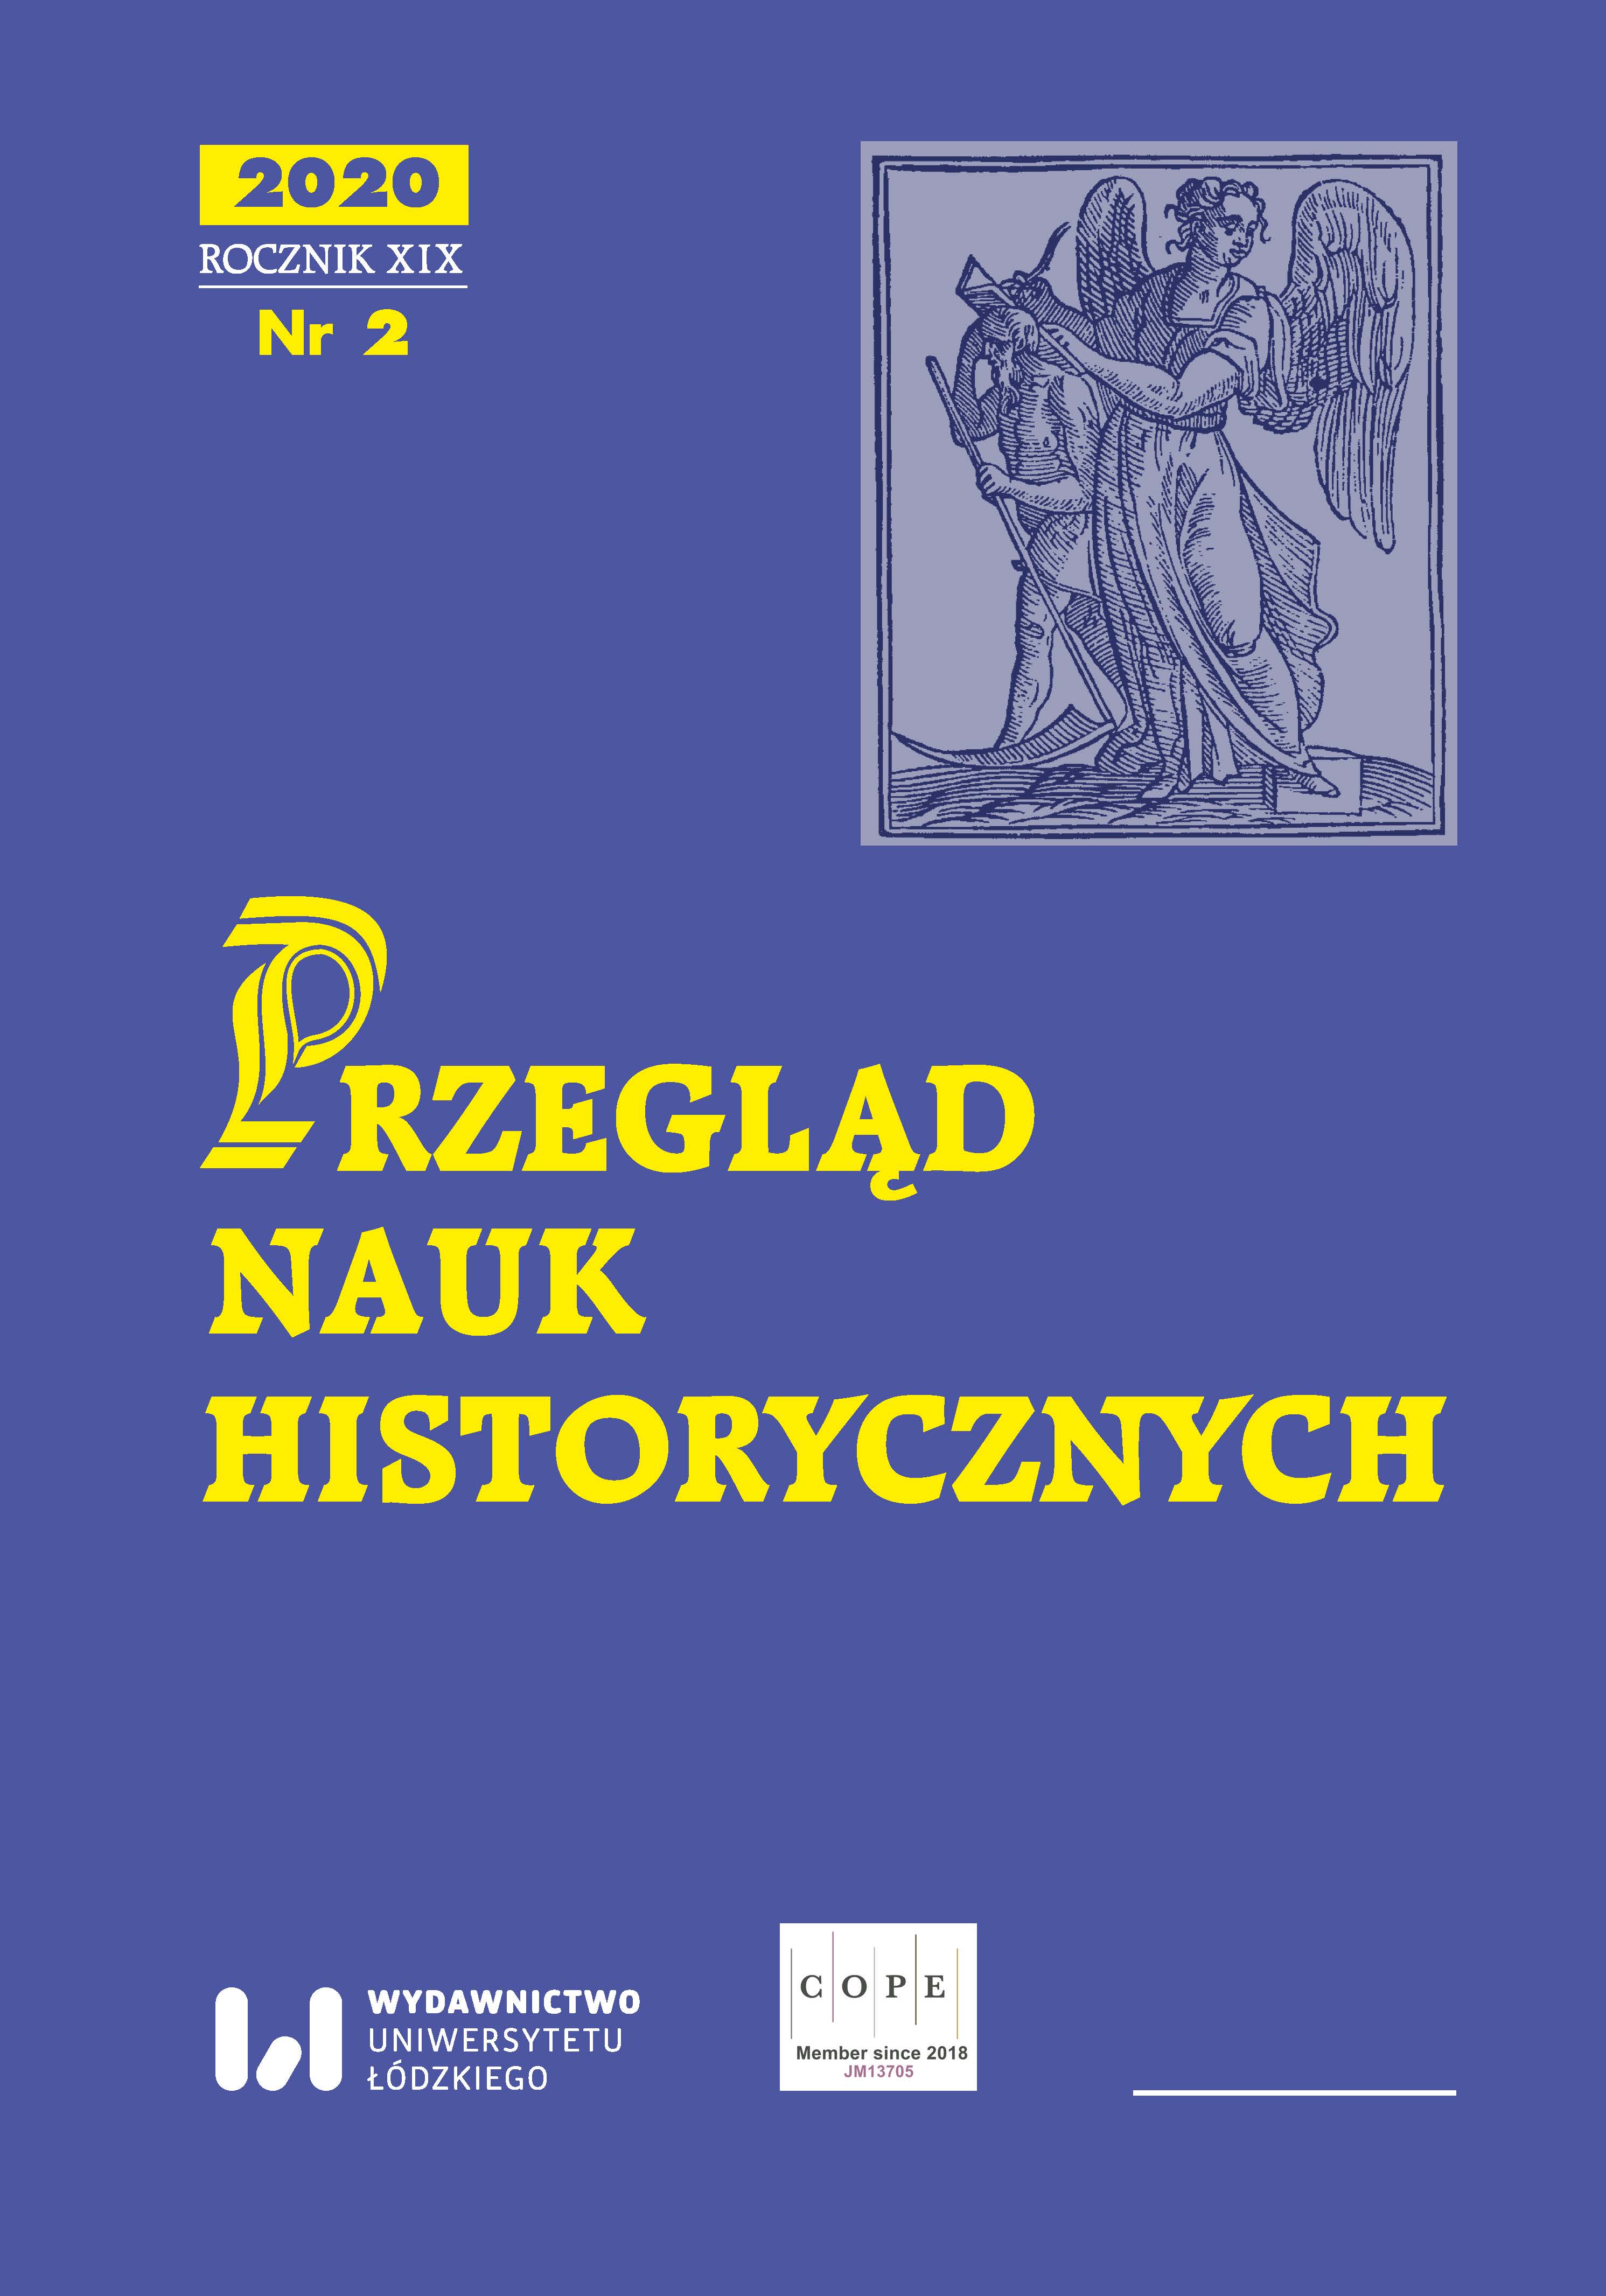 Niedatowana relacja o kościele parafialnym w Rembieszycach ze zbiorów Archiwum Diecezjalnego w Kielcach (trzecia ćwierć XIX wieku)